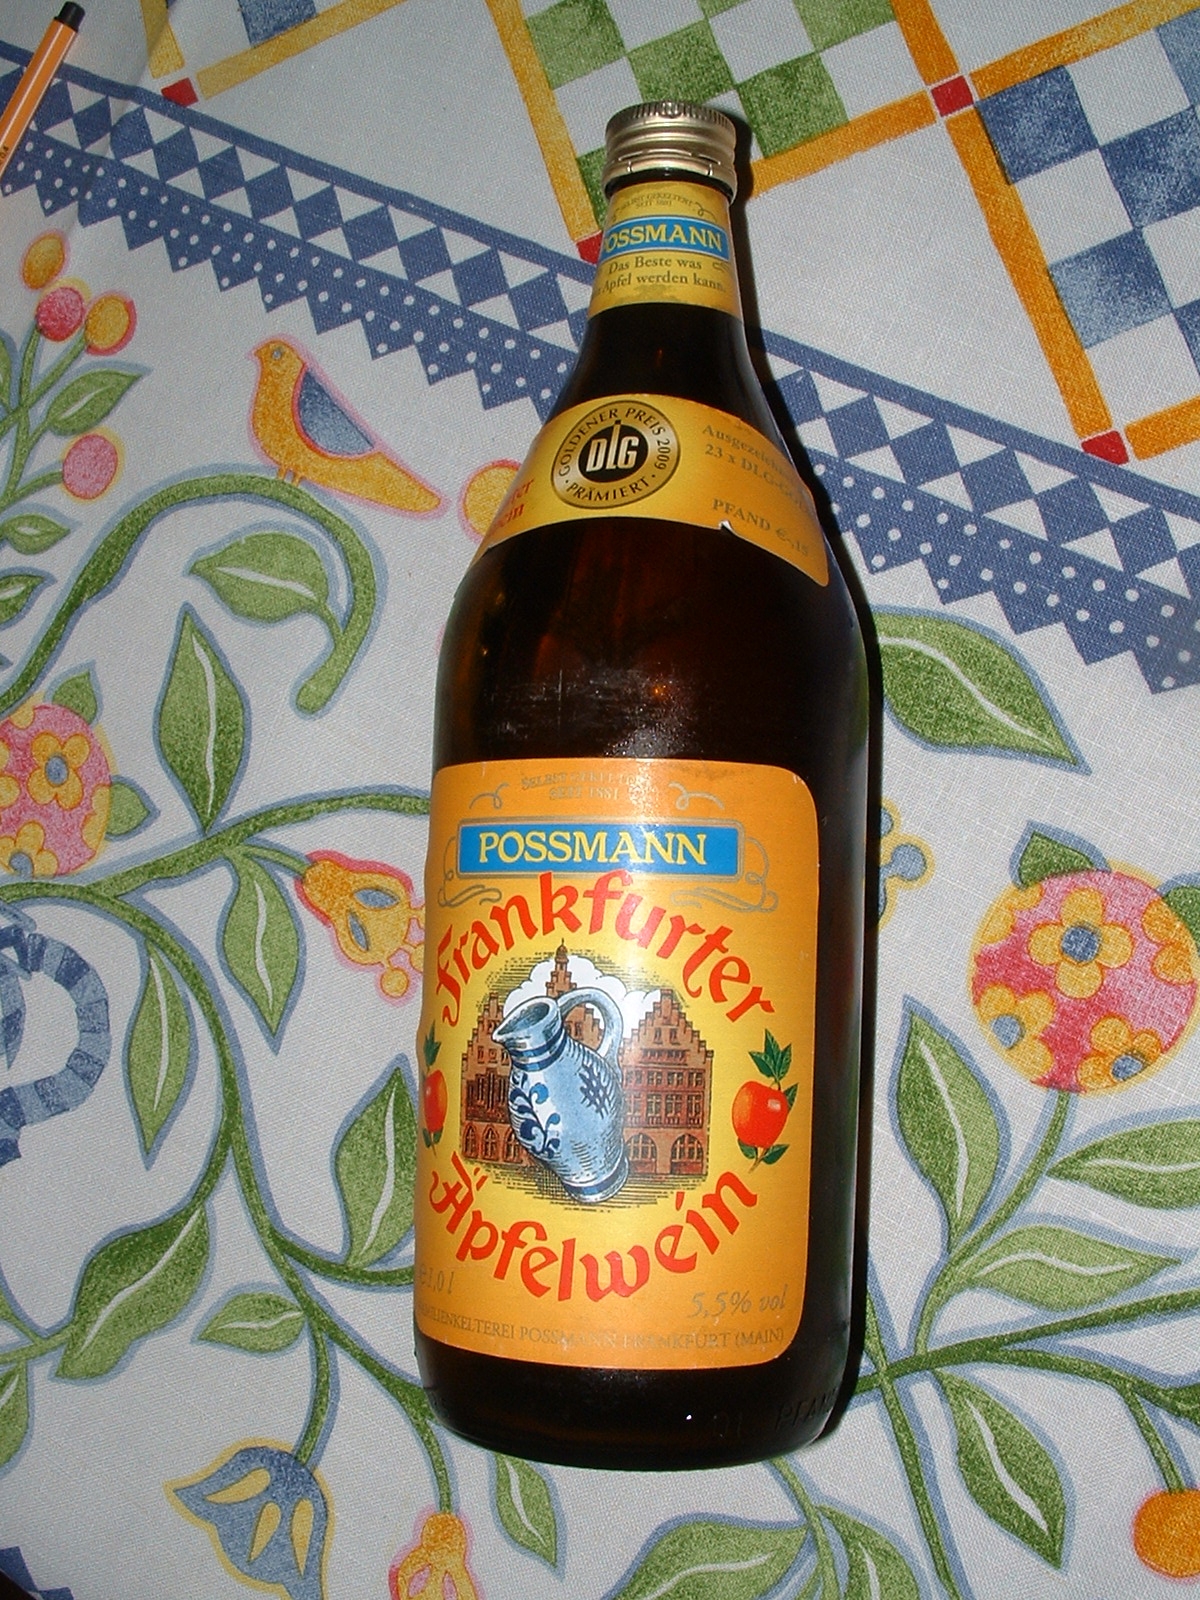 Frankfurter Äpfelwein von Possmann DLG prämiert mit dem Goldener Preis 2009 - 23 x ausgezeichnet